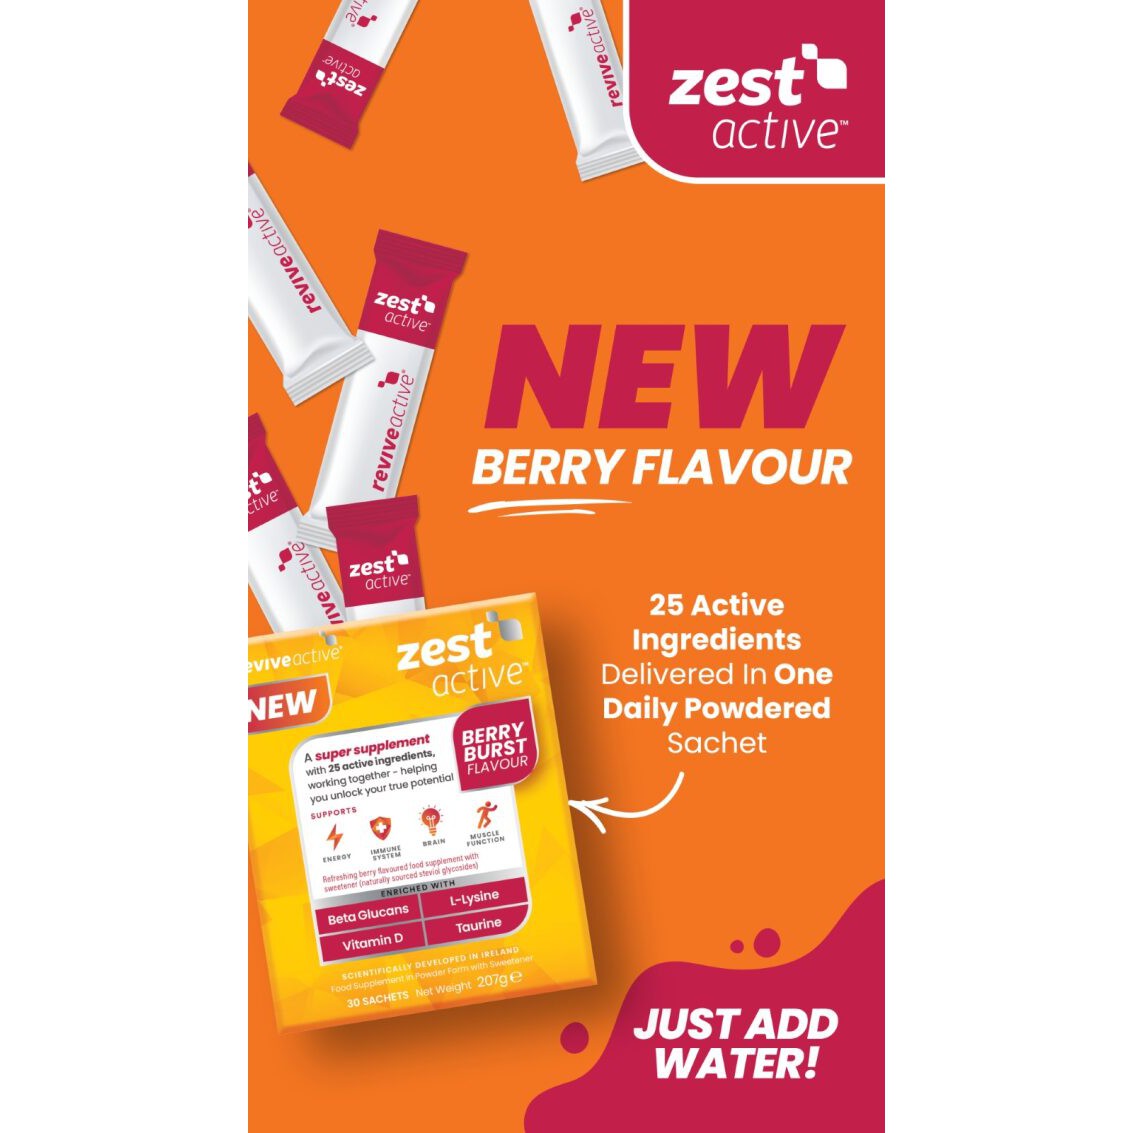 Revive Active Super Supplement Zest Active Berry Burst  Flavour 7 day pack